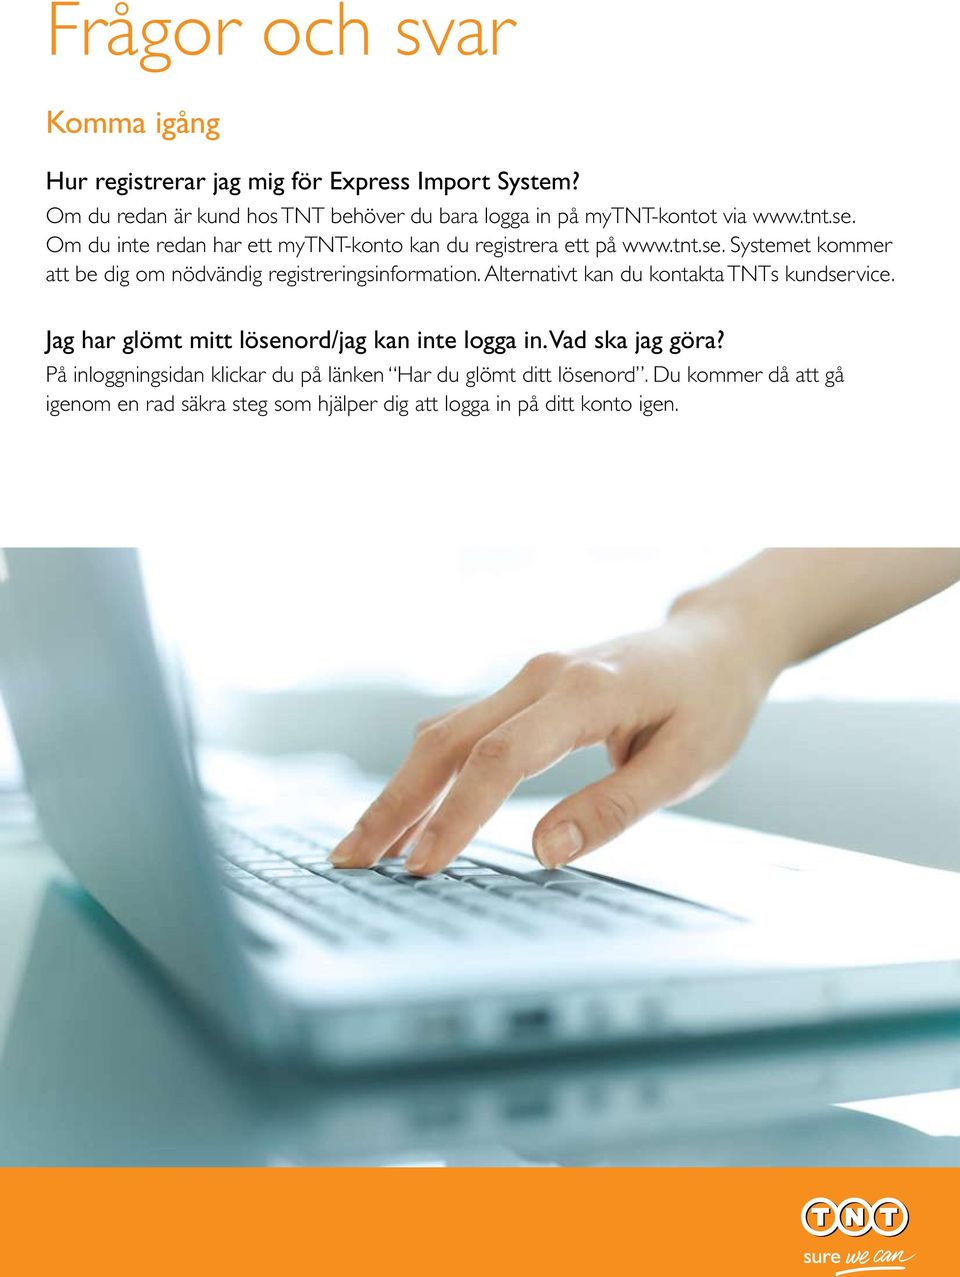 Om du inte redan har ett mytnt-konto kan du registrera ett på www.tnt.se. Systemet kommer att be dig om nödvändig registreringsinformation.